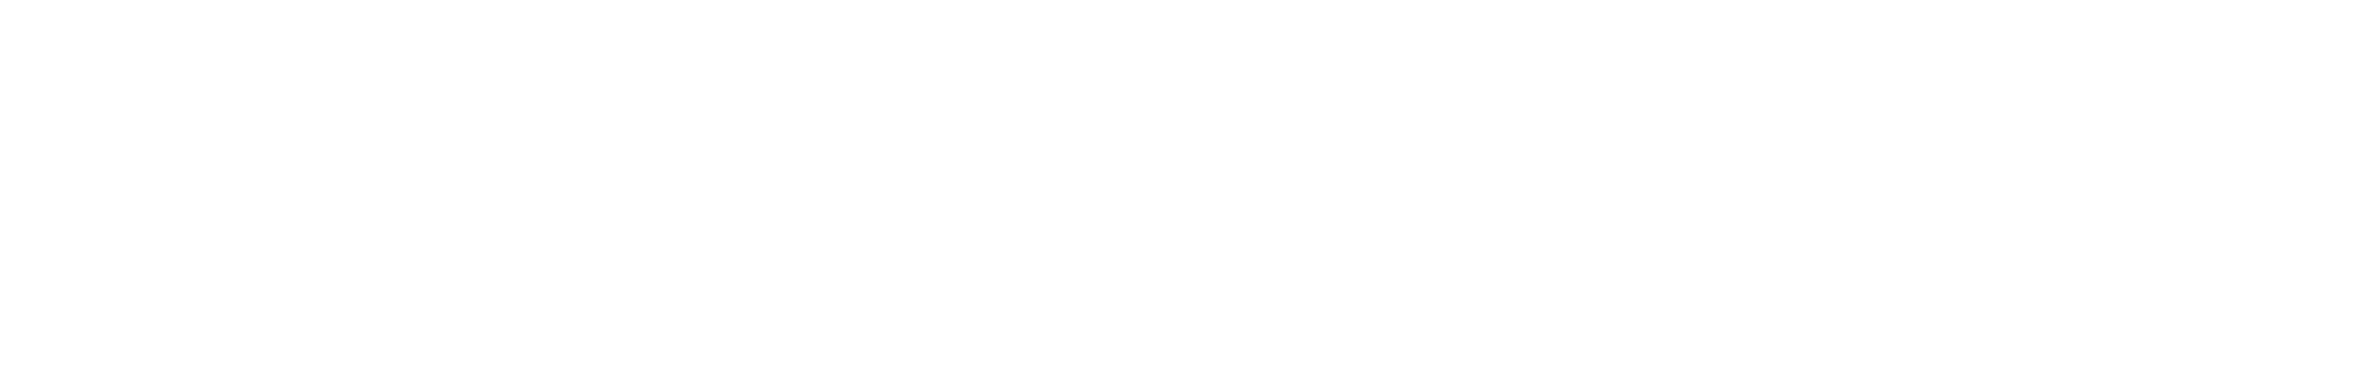 manni_group_logo_white